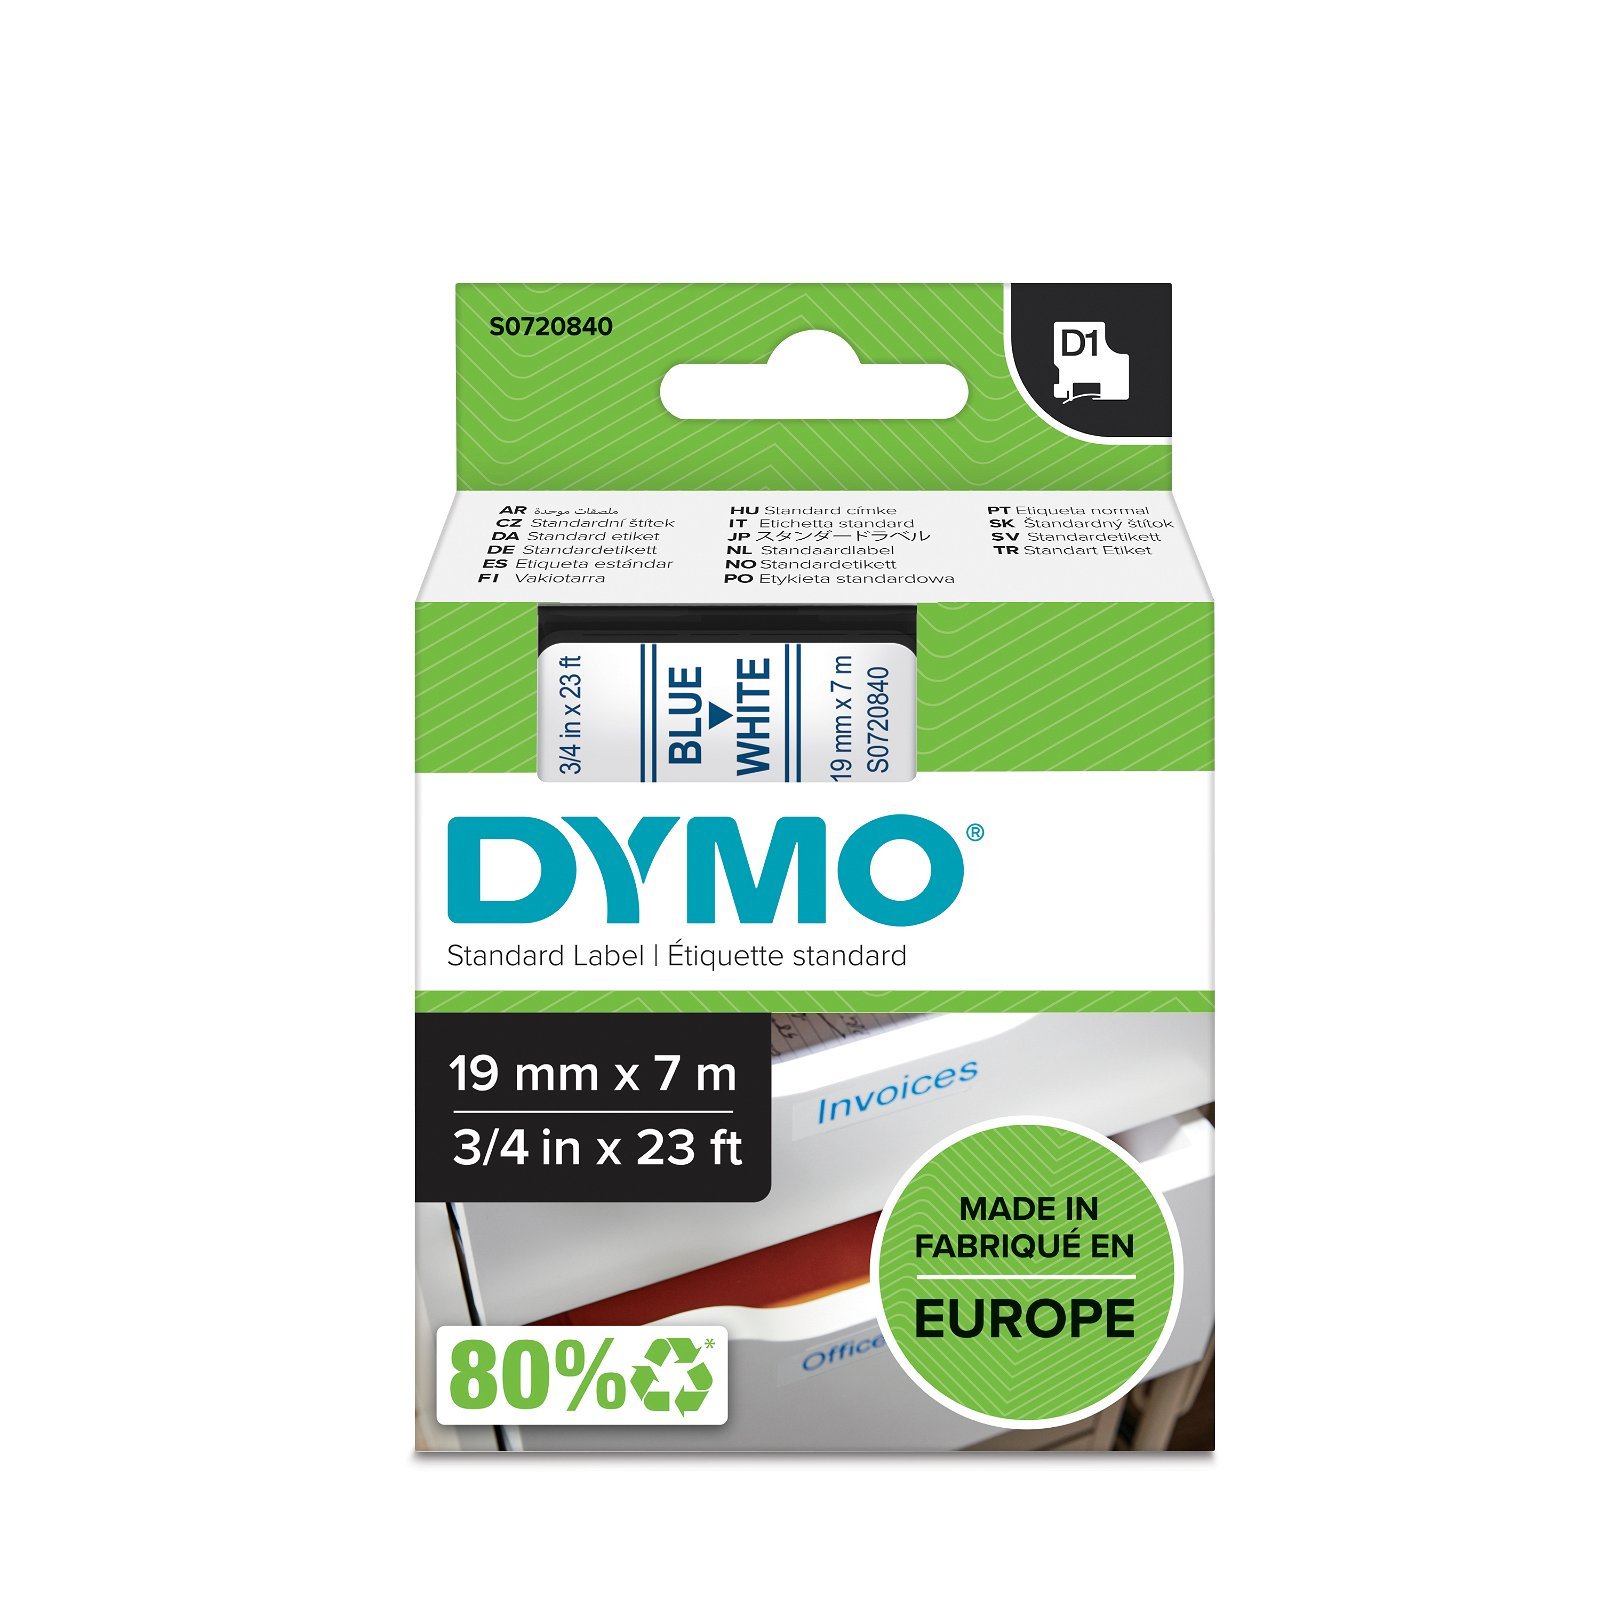 Dymo D1 standard tapekasette 19 mm bla;hvid Polyester